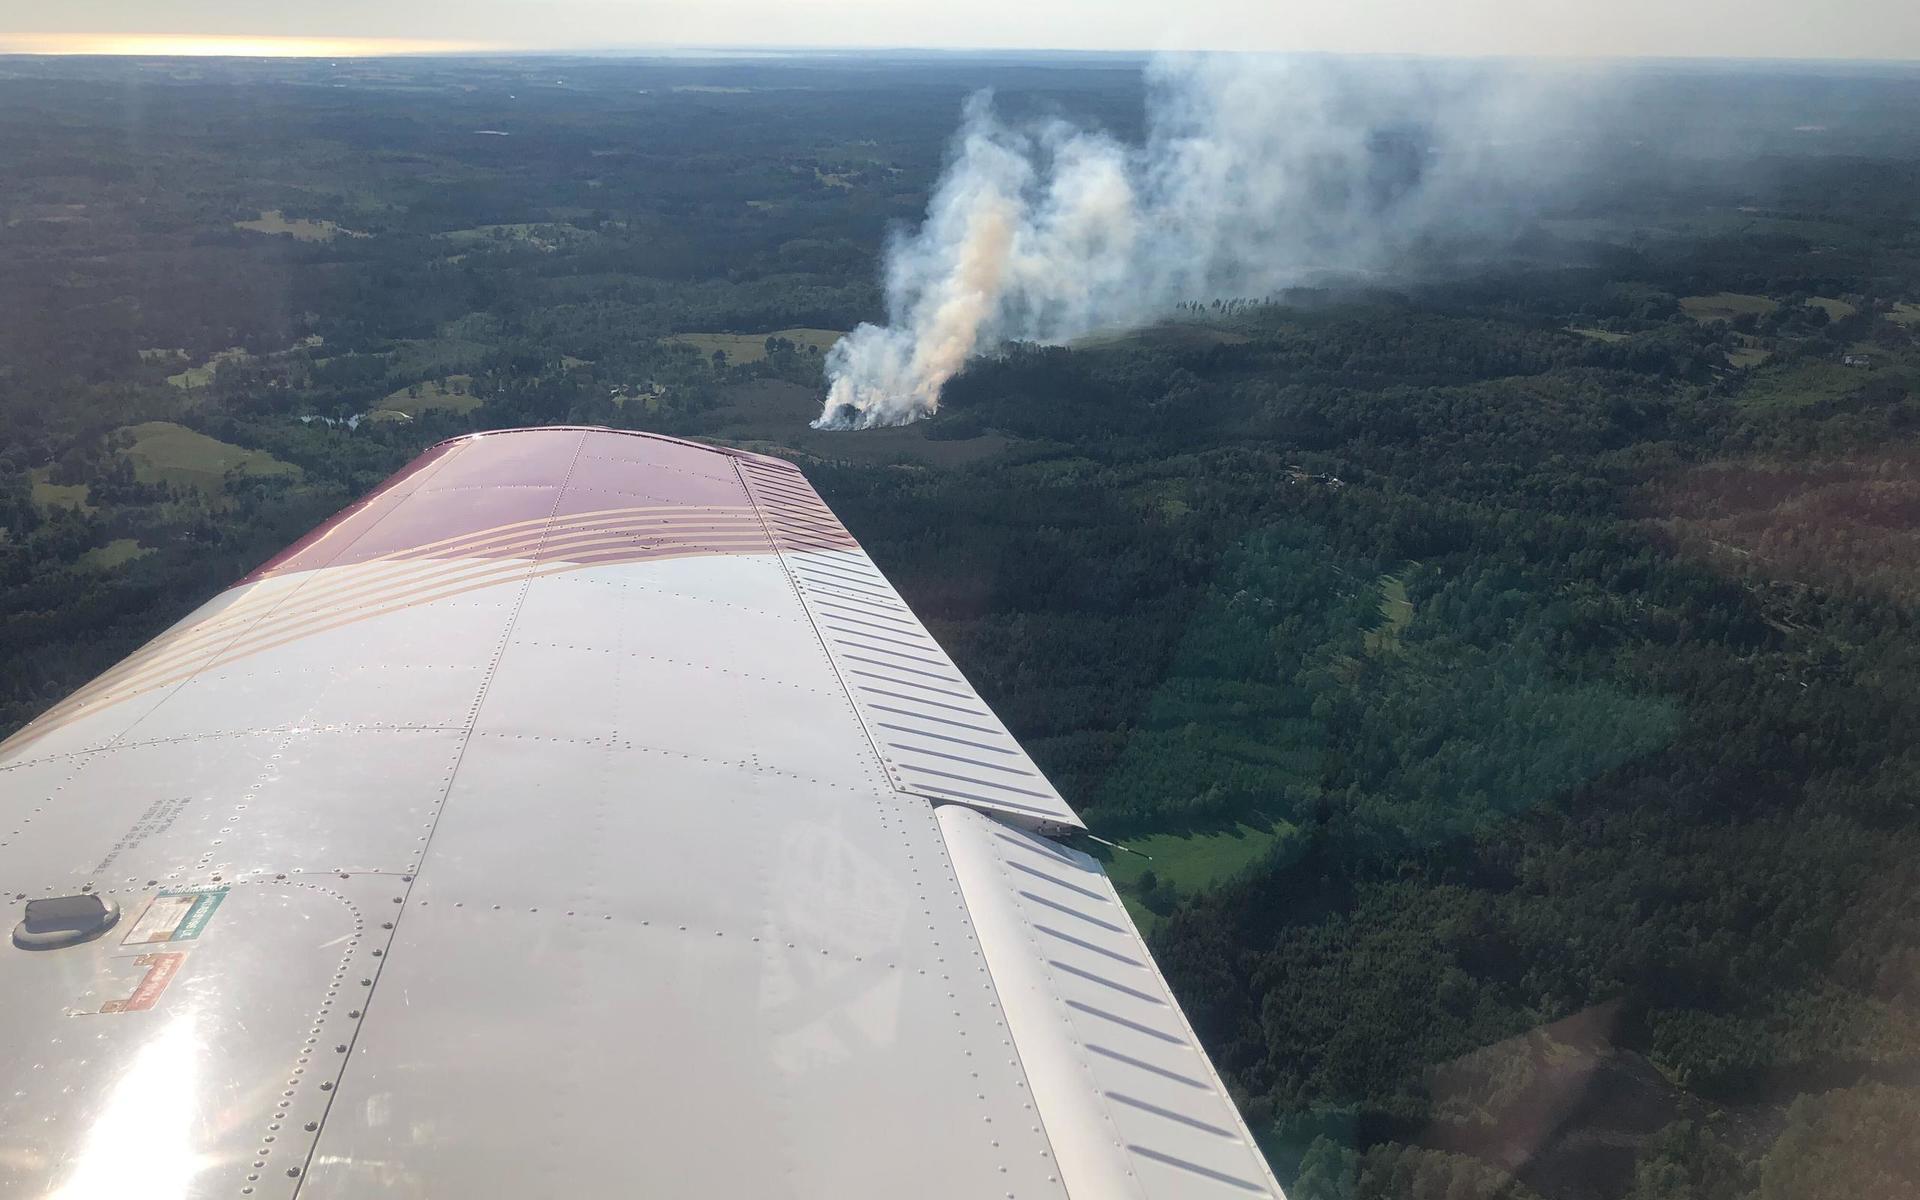 På 50 km avstånd får brandflyget syn på en rökpelare i horisonten. Det visar sig vara en gräsbrand i Bållalt utanför Knäred.